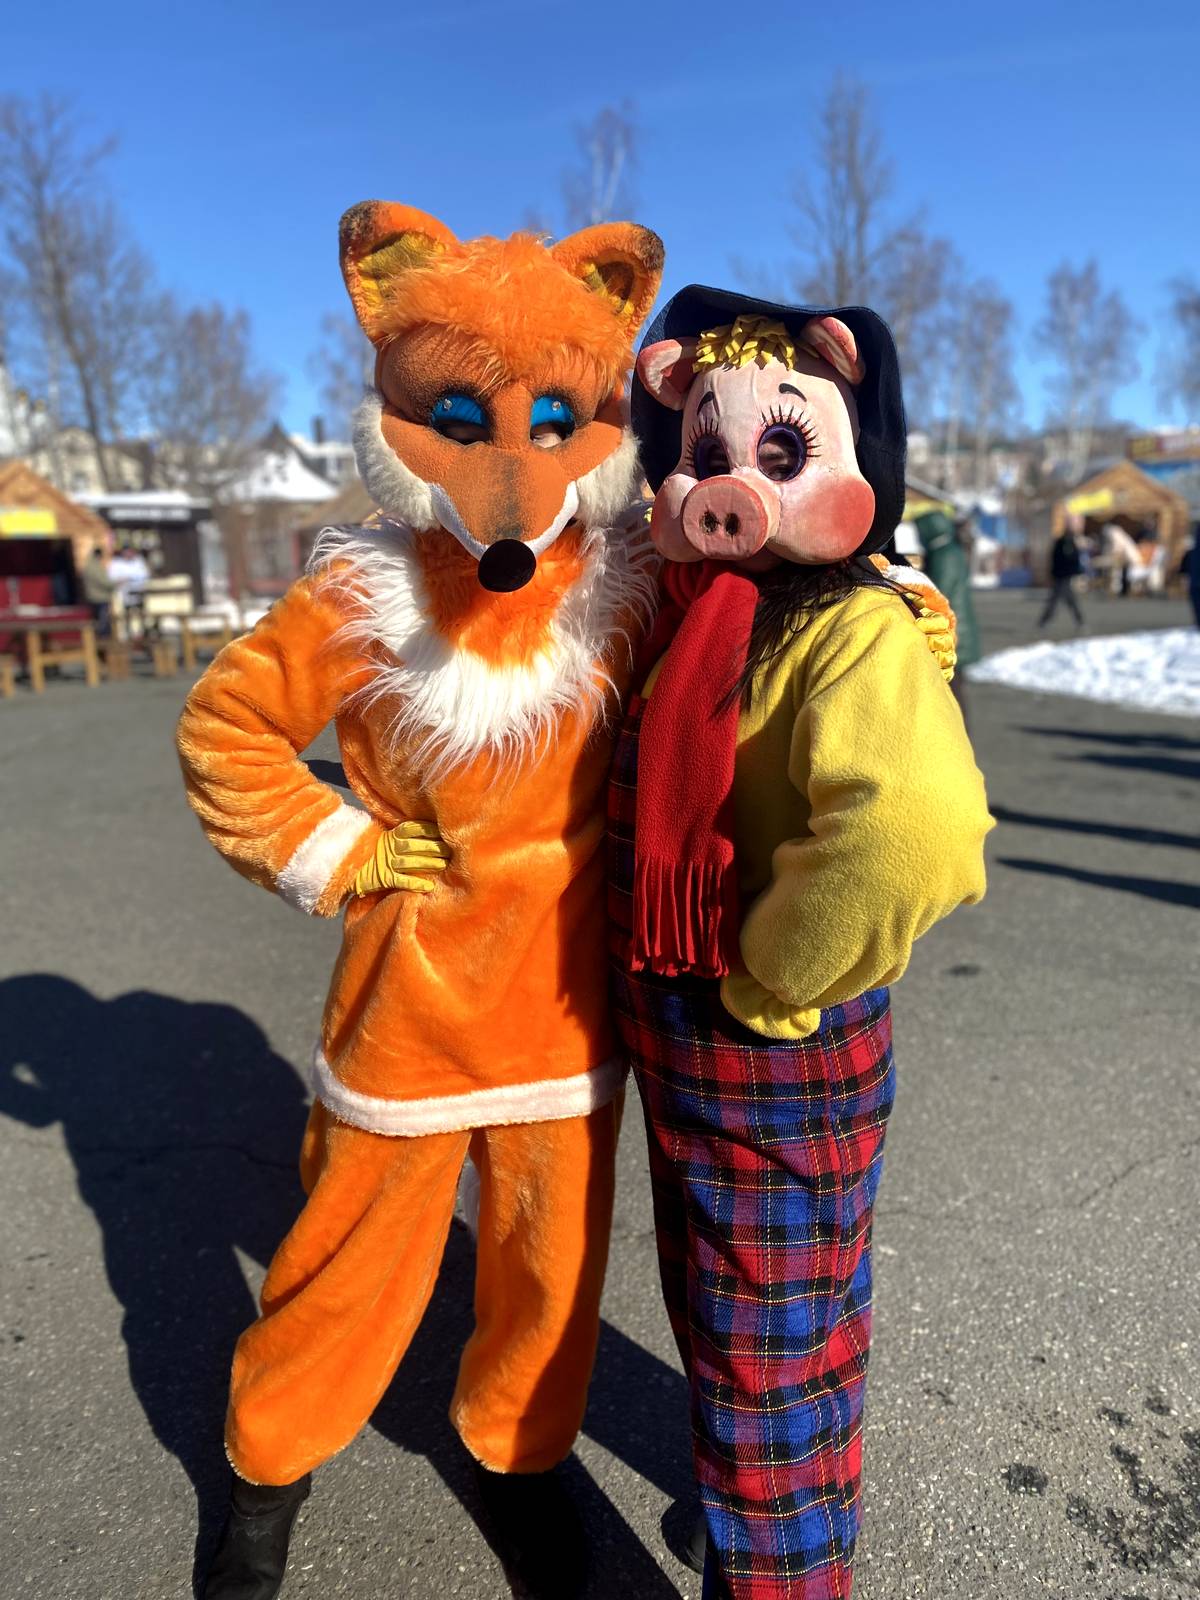 Театр Актера и Куклы "Крошка" сегодня поздравил жителей города Саранска с Масленицей! 